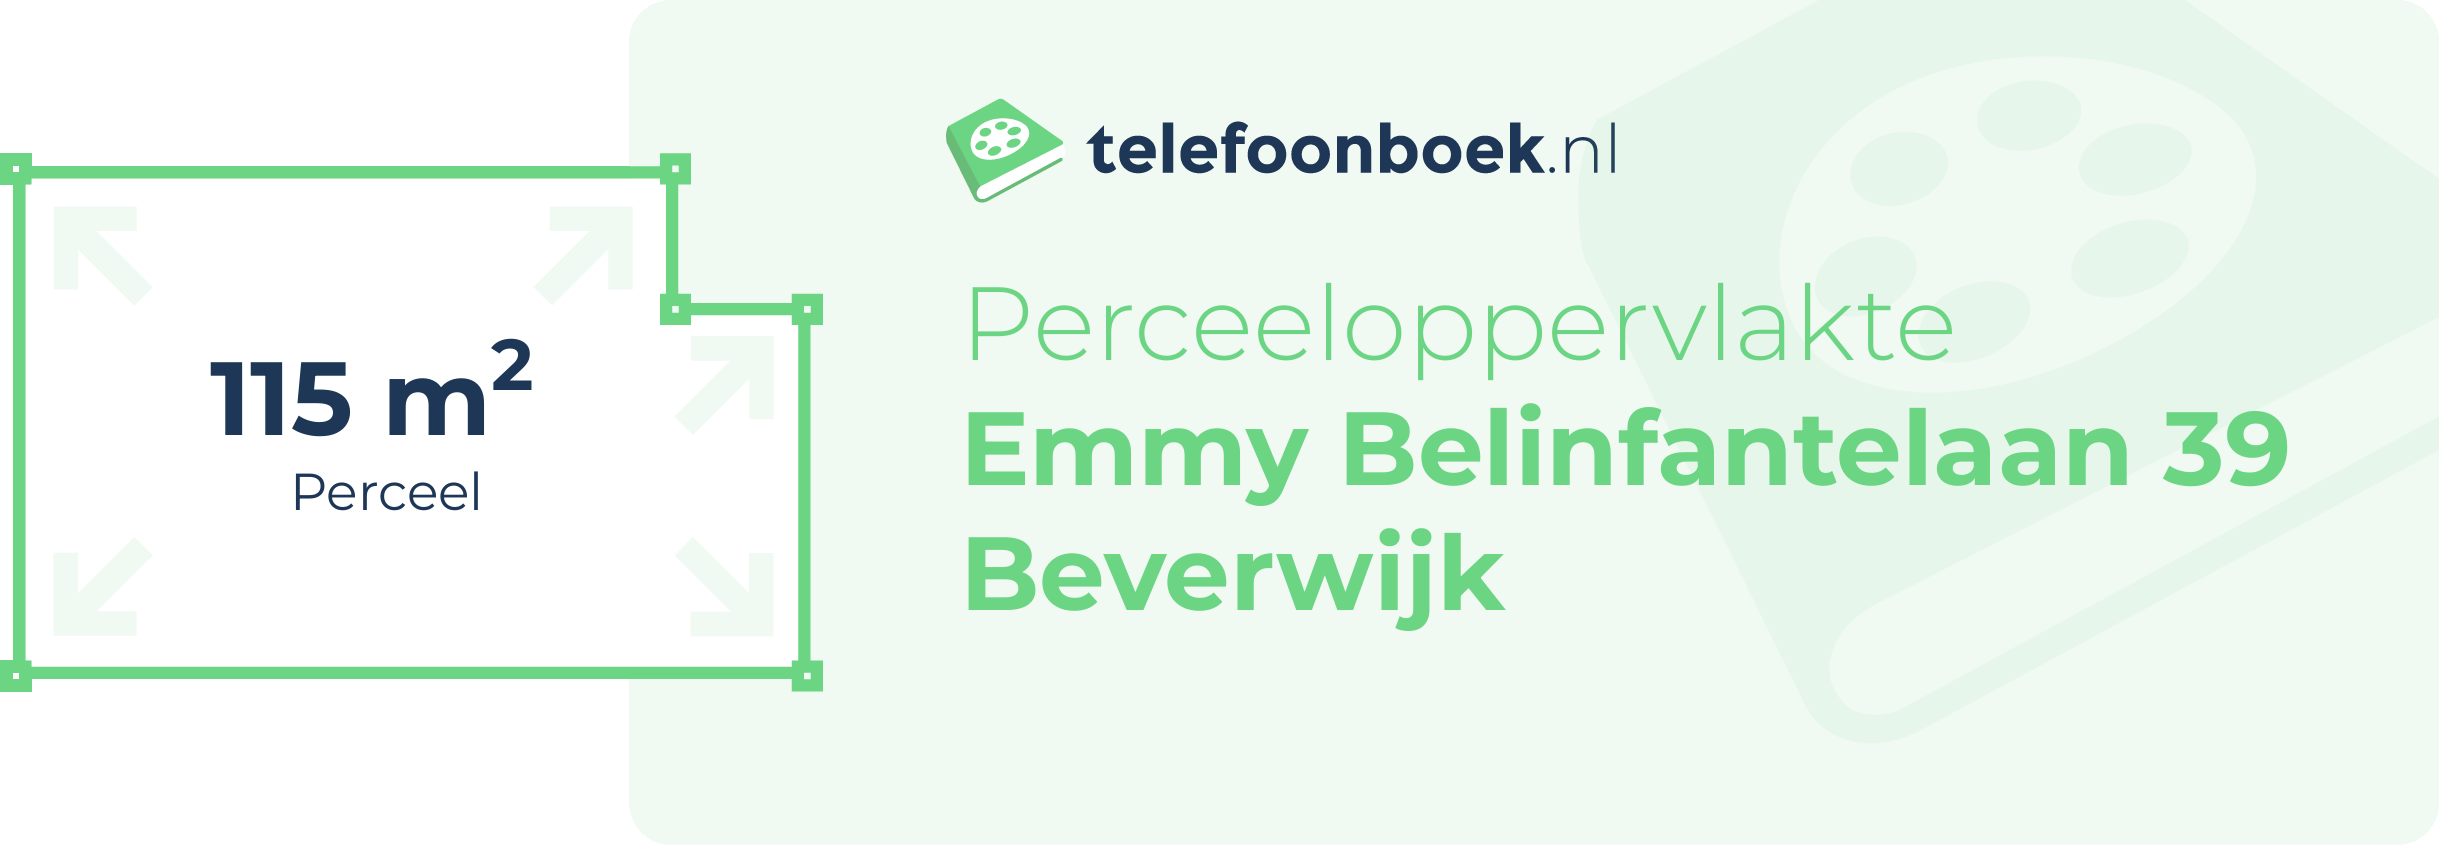 Perceeloppervlakte Emmy Belinfantelaan 39 Beverwijk